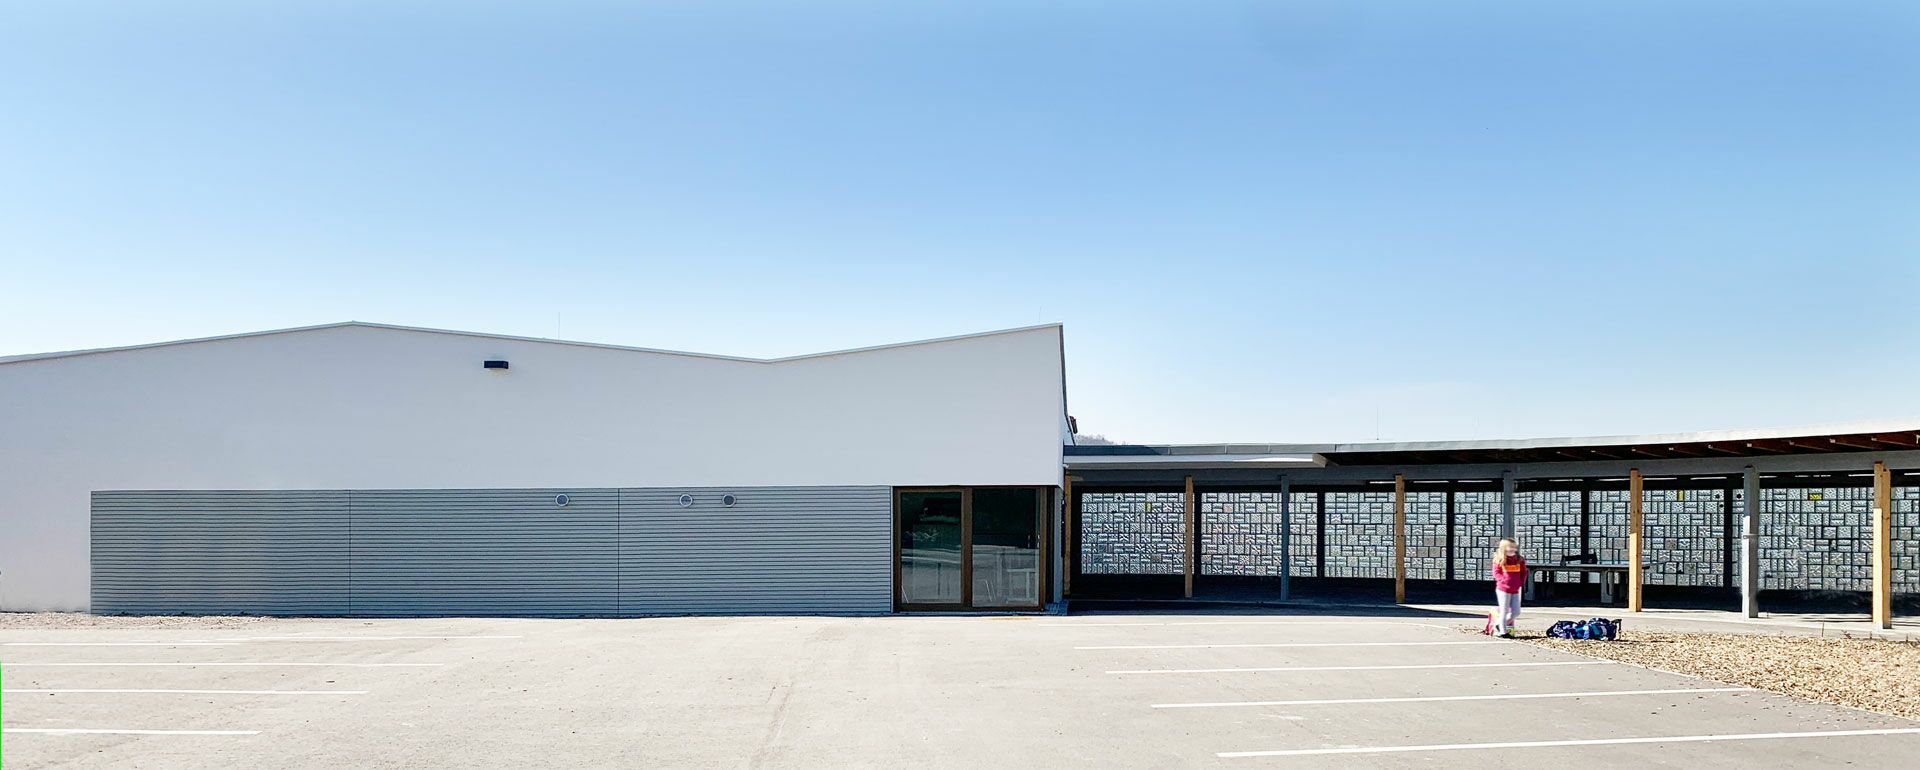 Mehrzweckhalle in Wiechs, Architekturbüro Herzog, Schweiz